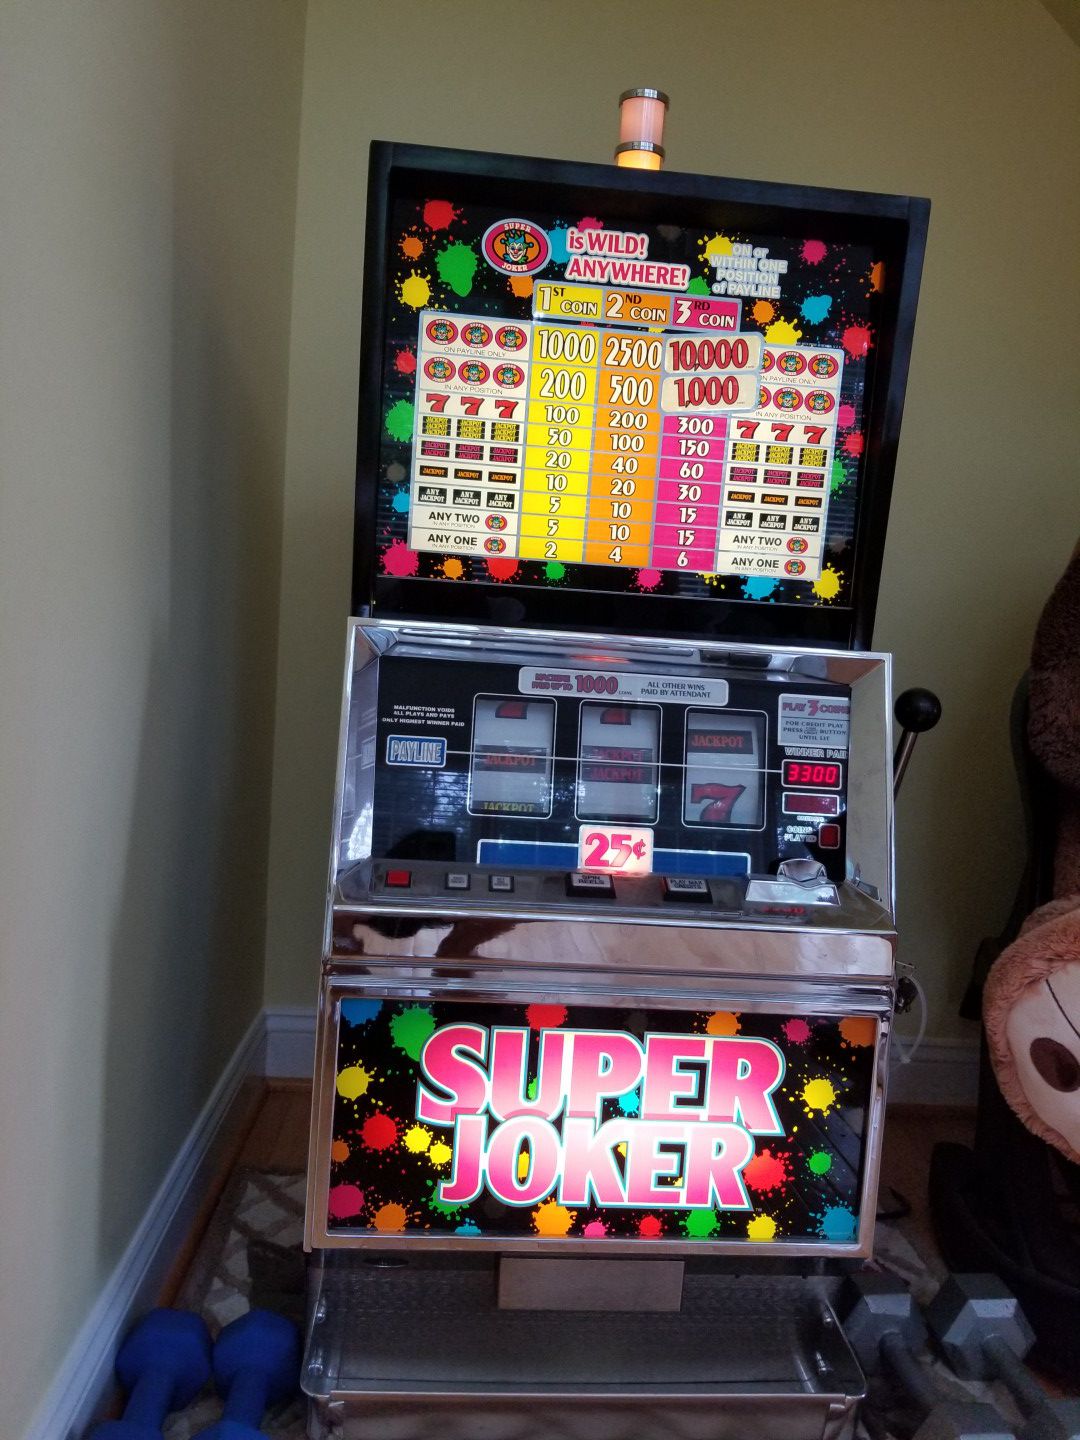 Super Joker slot machine